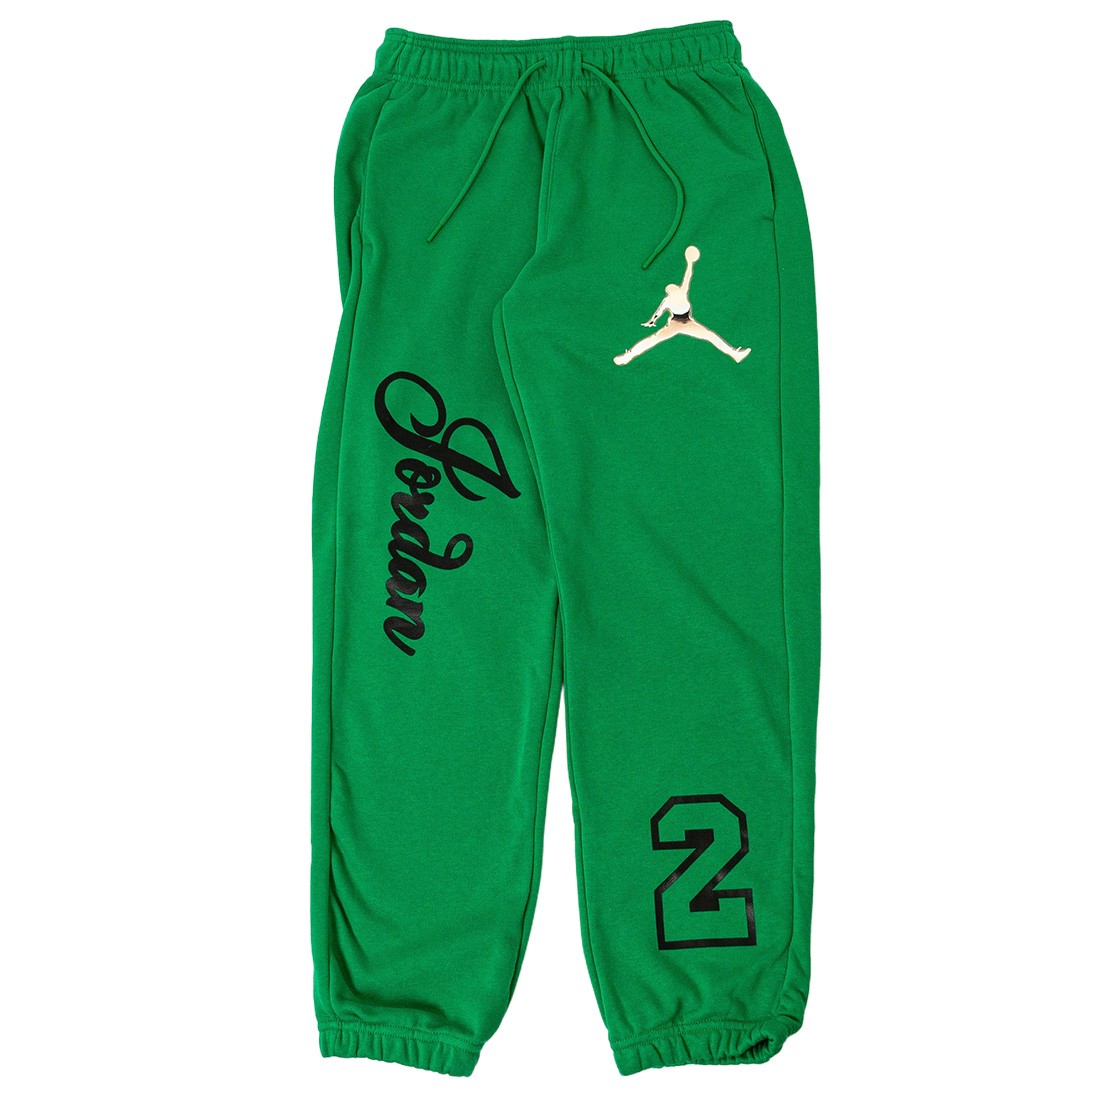 Jordan Women Pants (lucky green)